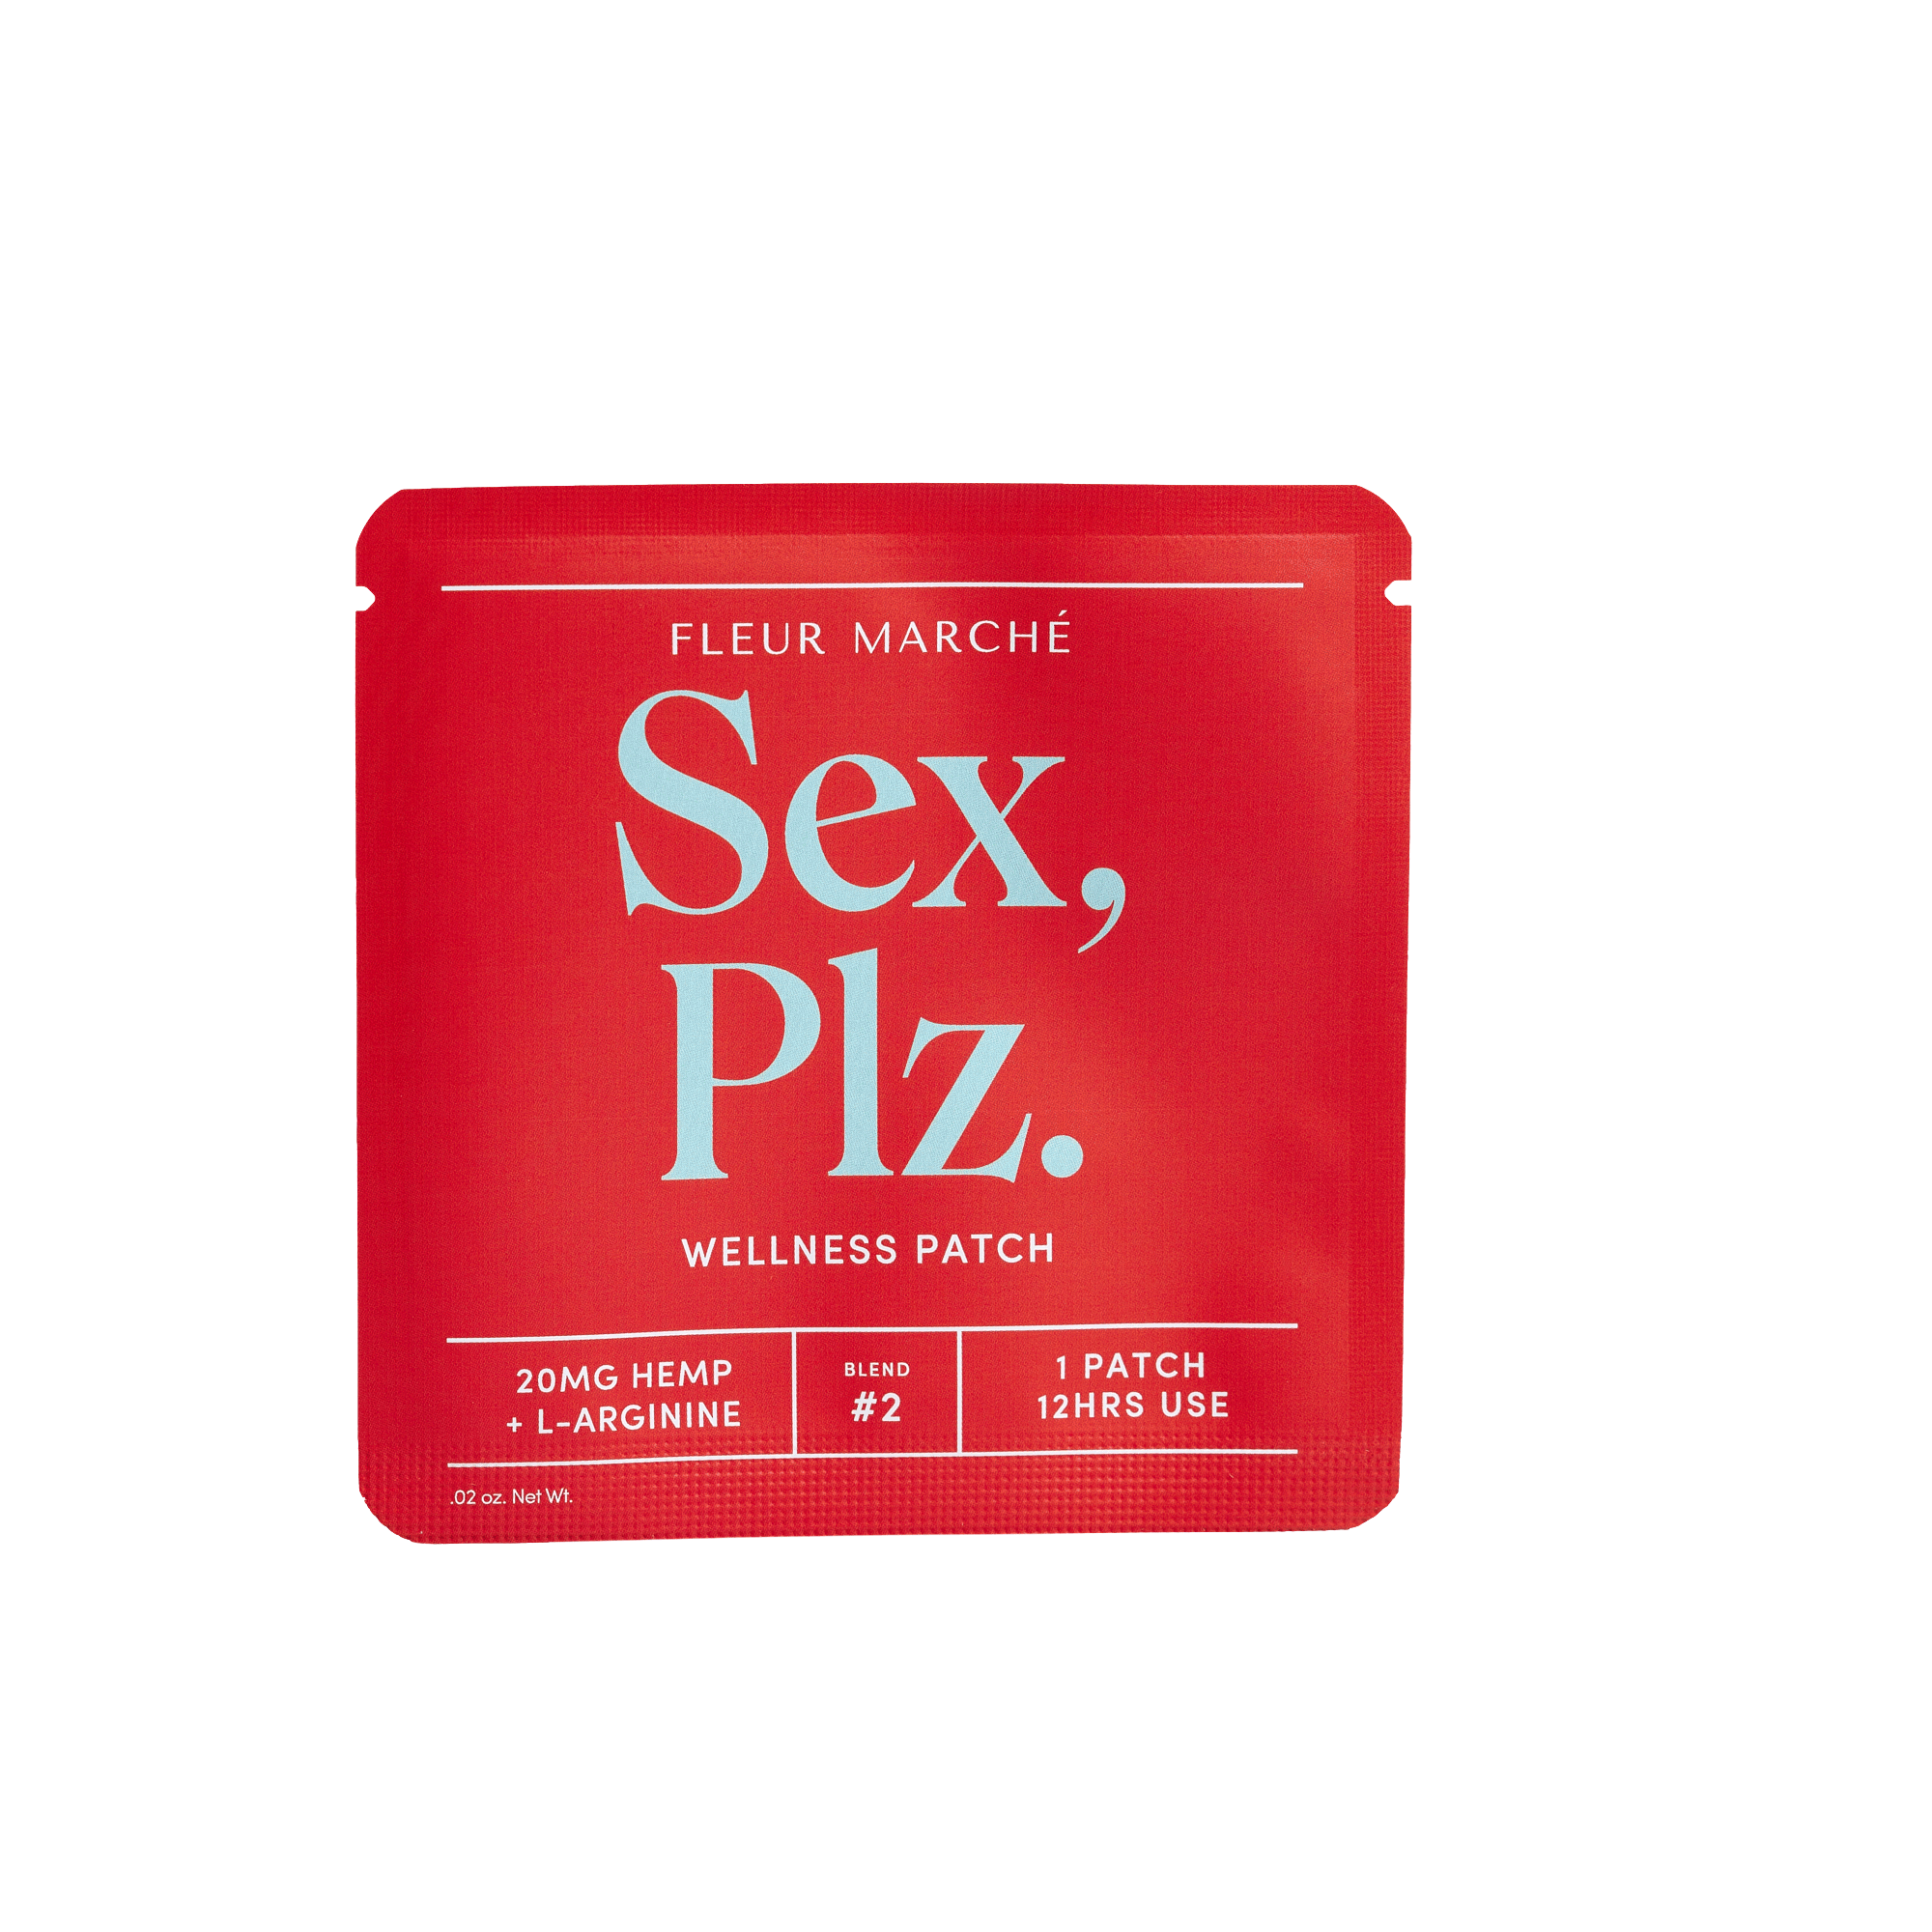 Sex Plz. patch